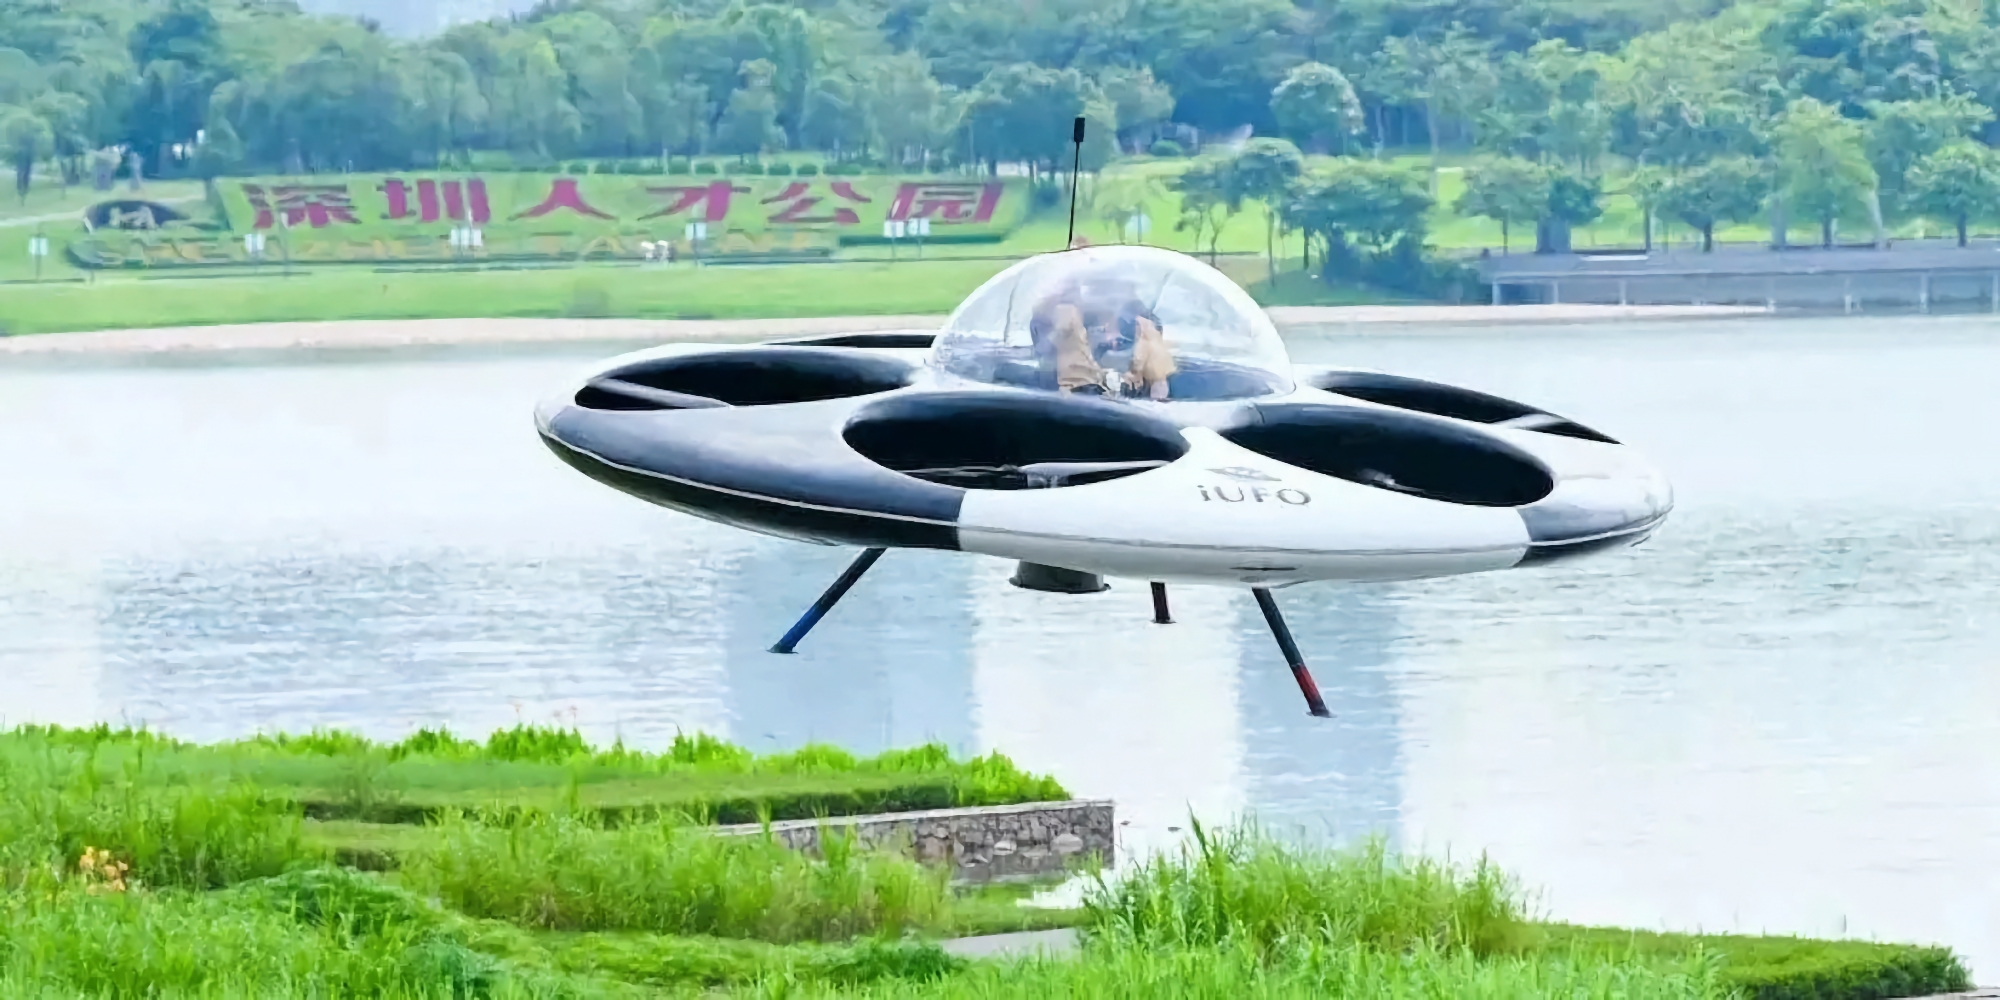 Shenzen UFO Flying Saucer Technology har avslöjat en passagerardrönare i form av ett flygande tefat